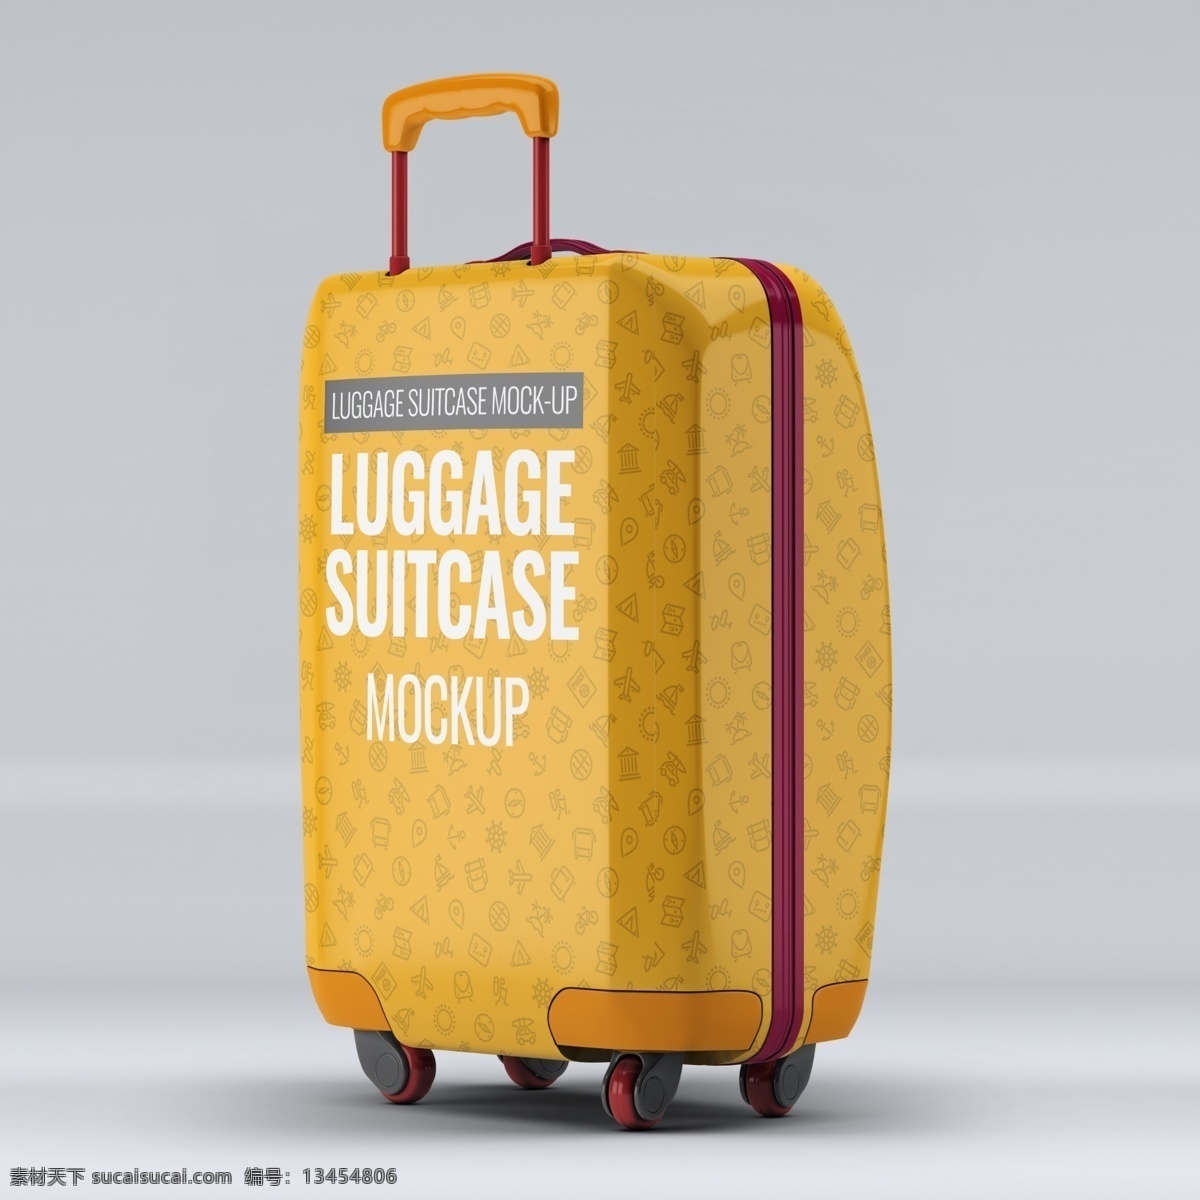 黄色 行李箱 样机 行李 箱子 包箱 样机模板 行李箱样机 黄色行李箱